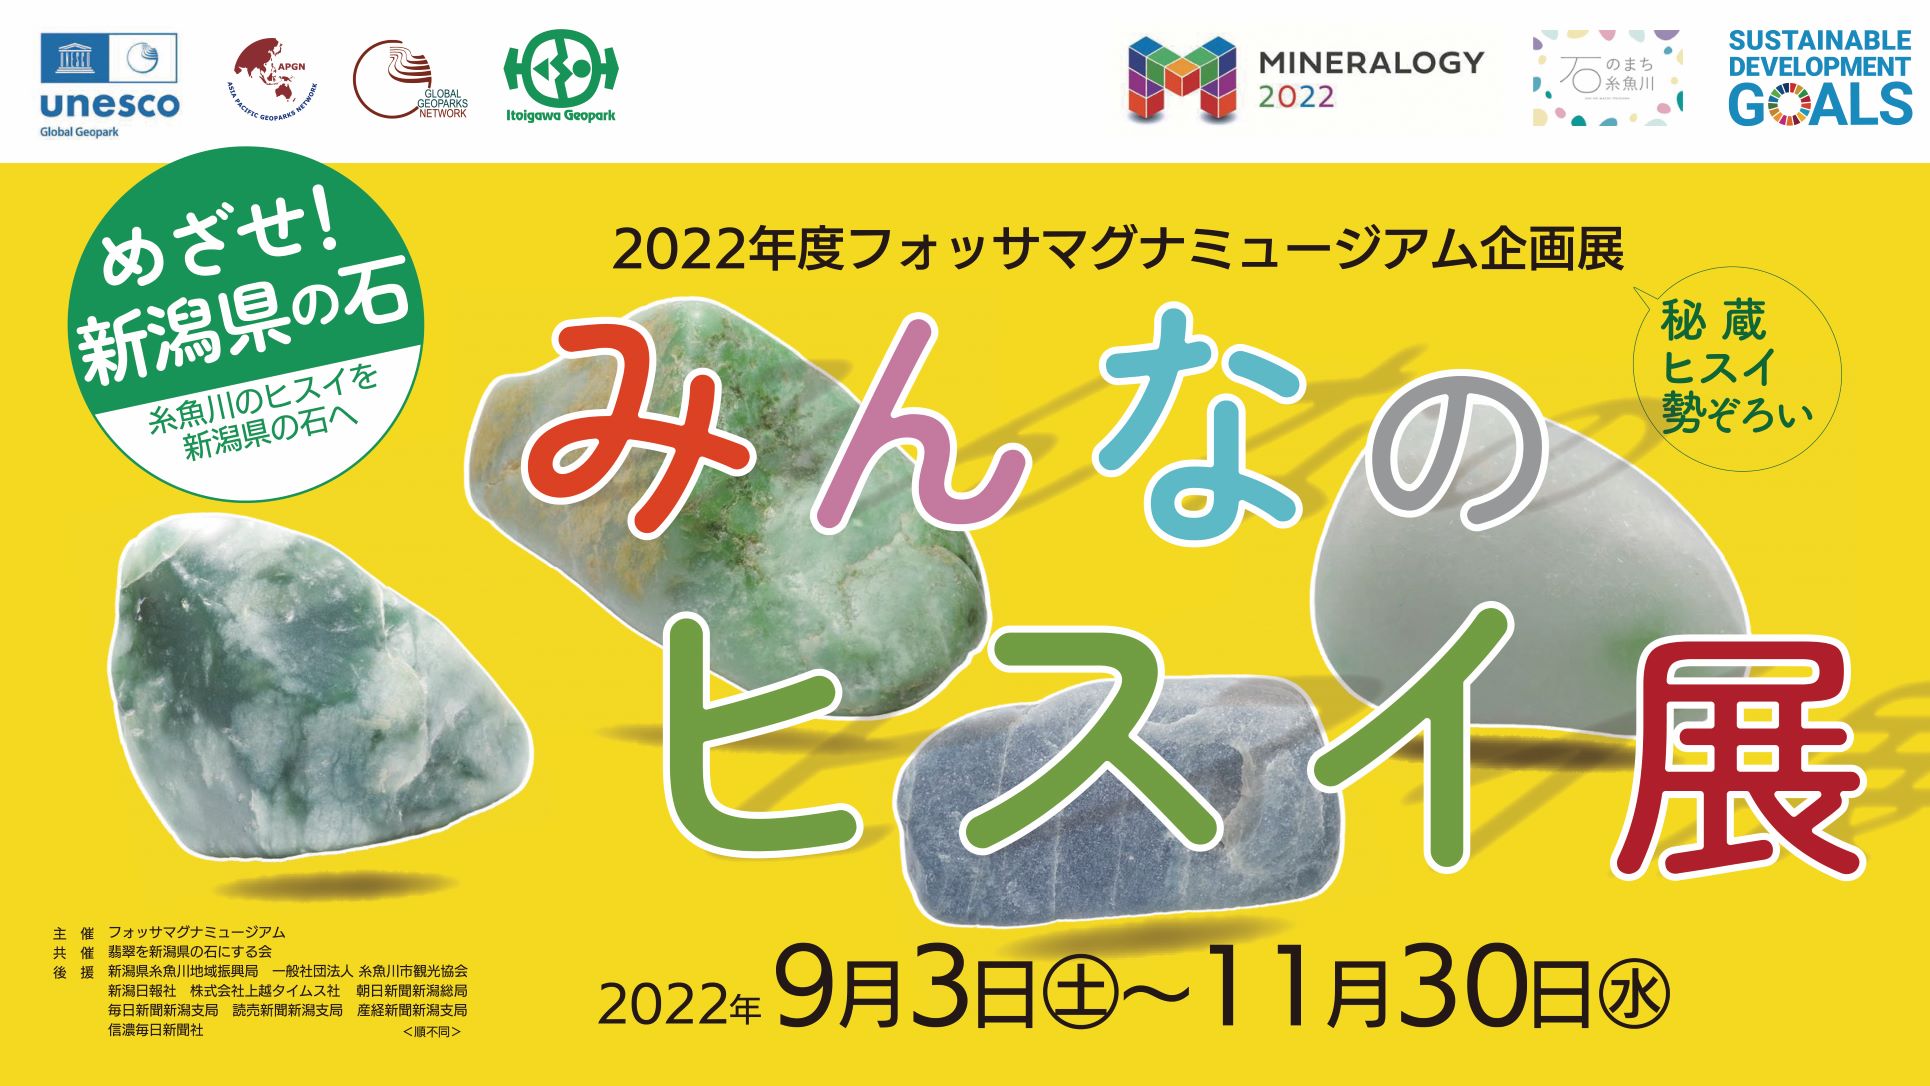 企画展「みんなのヒスイ展」 -糸魚川のヒスイが新潟県の石に